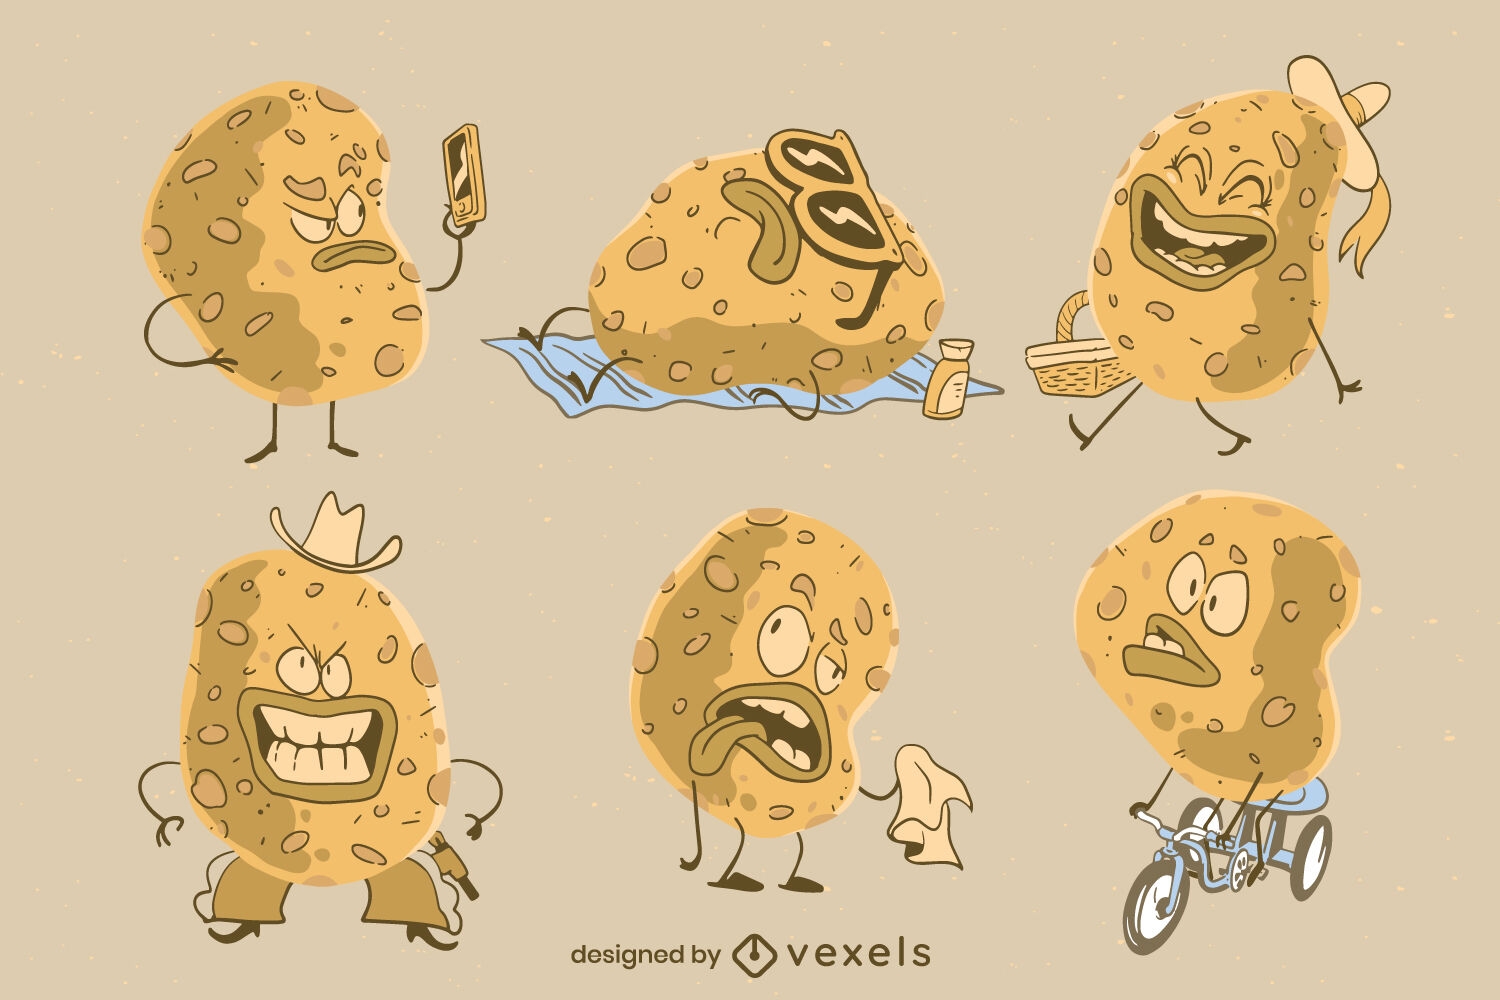 Kartoffelchip-Snack-Food-Charakter-Cartoon-Set